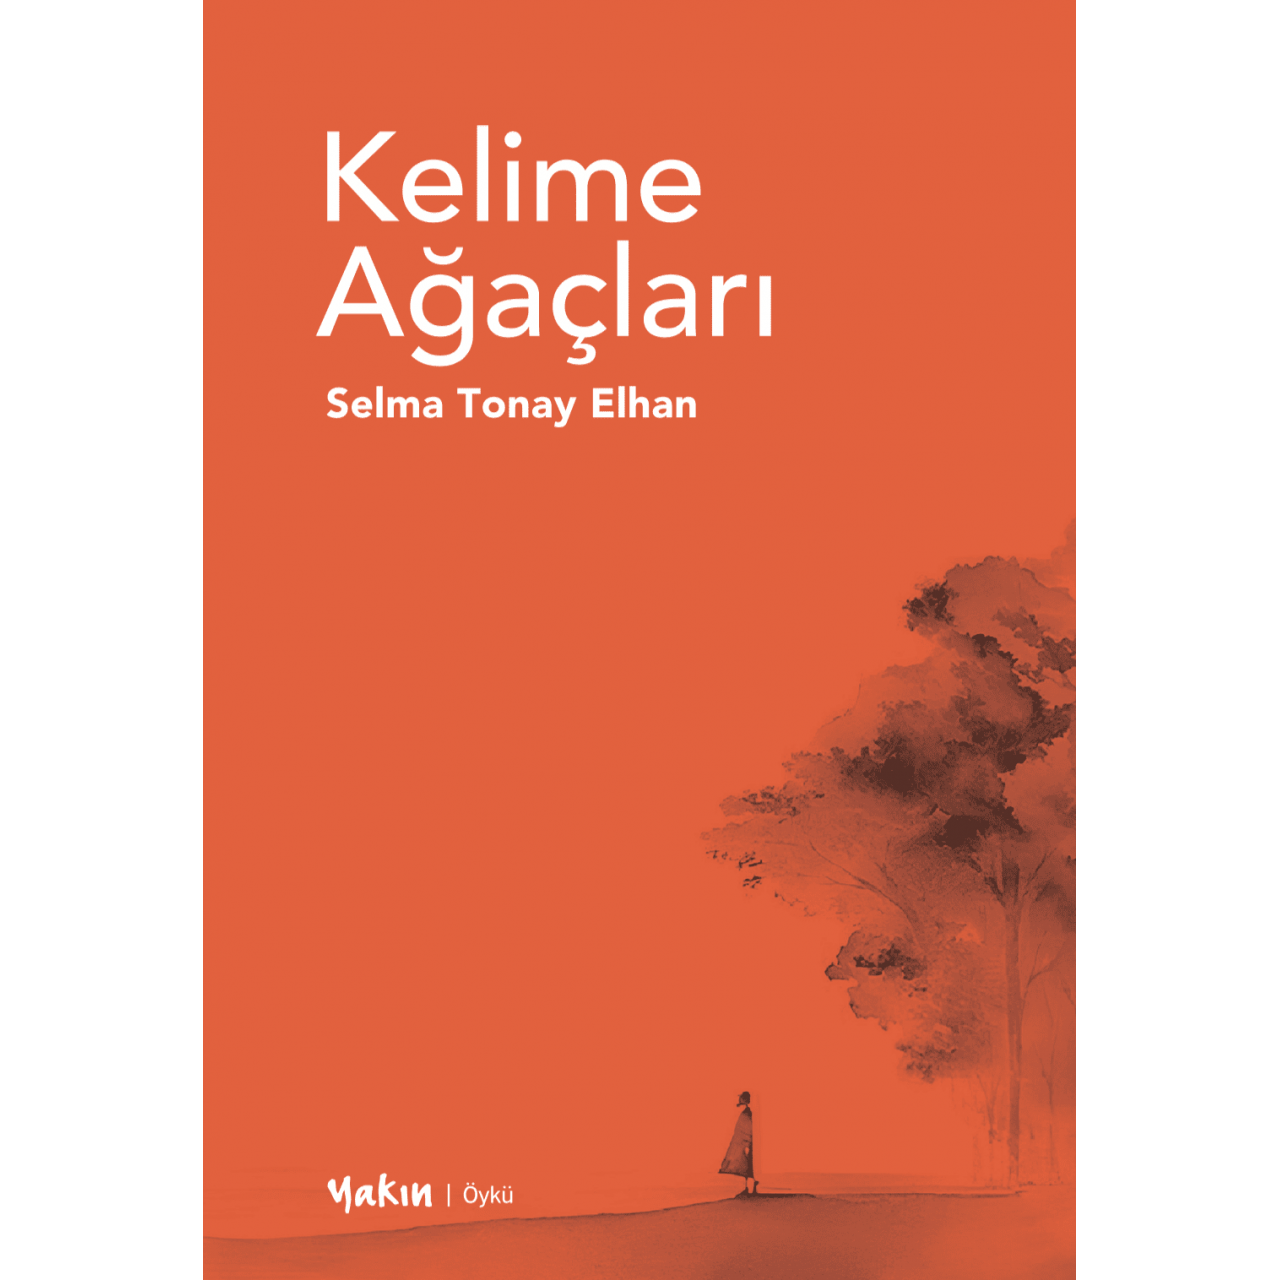 KELİME AĞAÇLARI - Selma Tonay Elhan -öykü